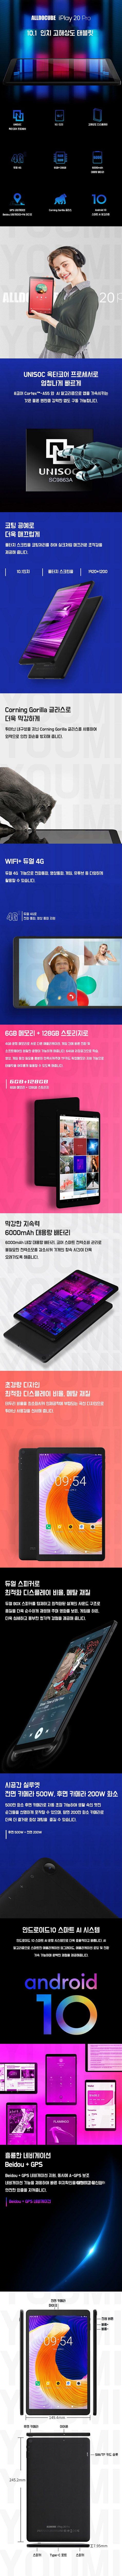 [Qoo10] iPlay 20 PRO 6+ 태블릿 128GB 글로벌버전 ( 132,820원 / 무료배송 ) - 